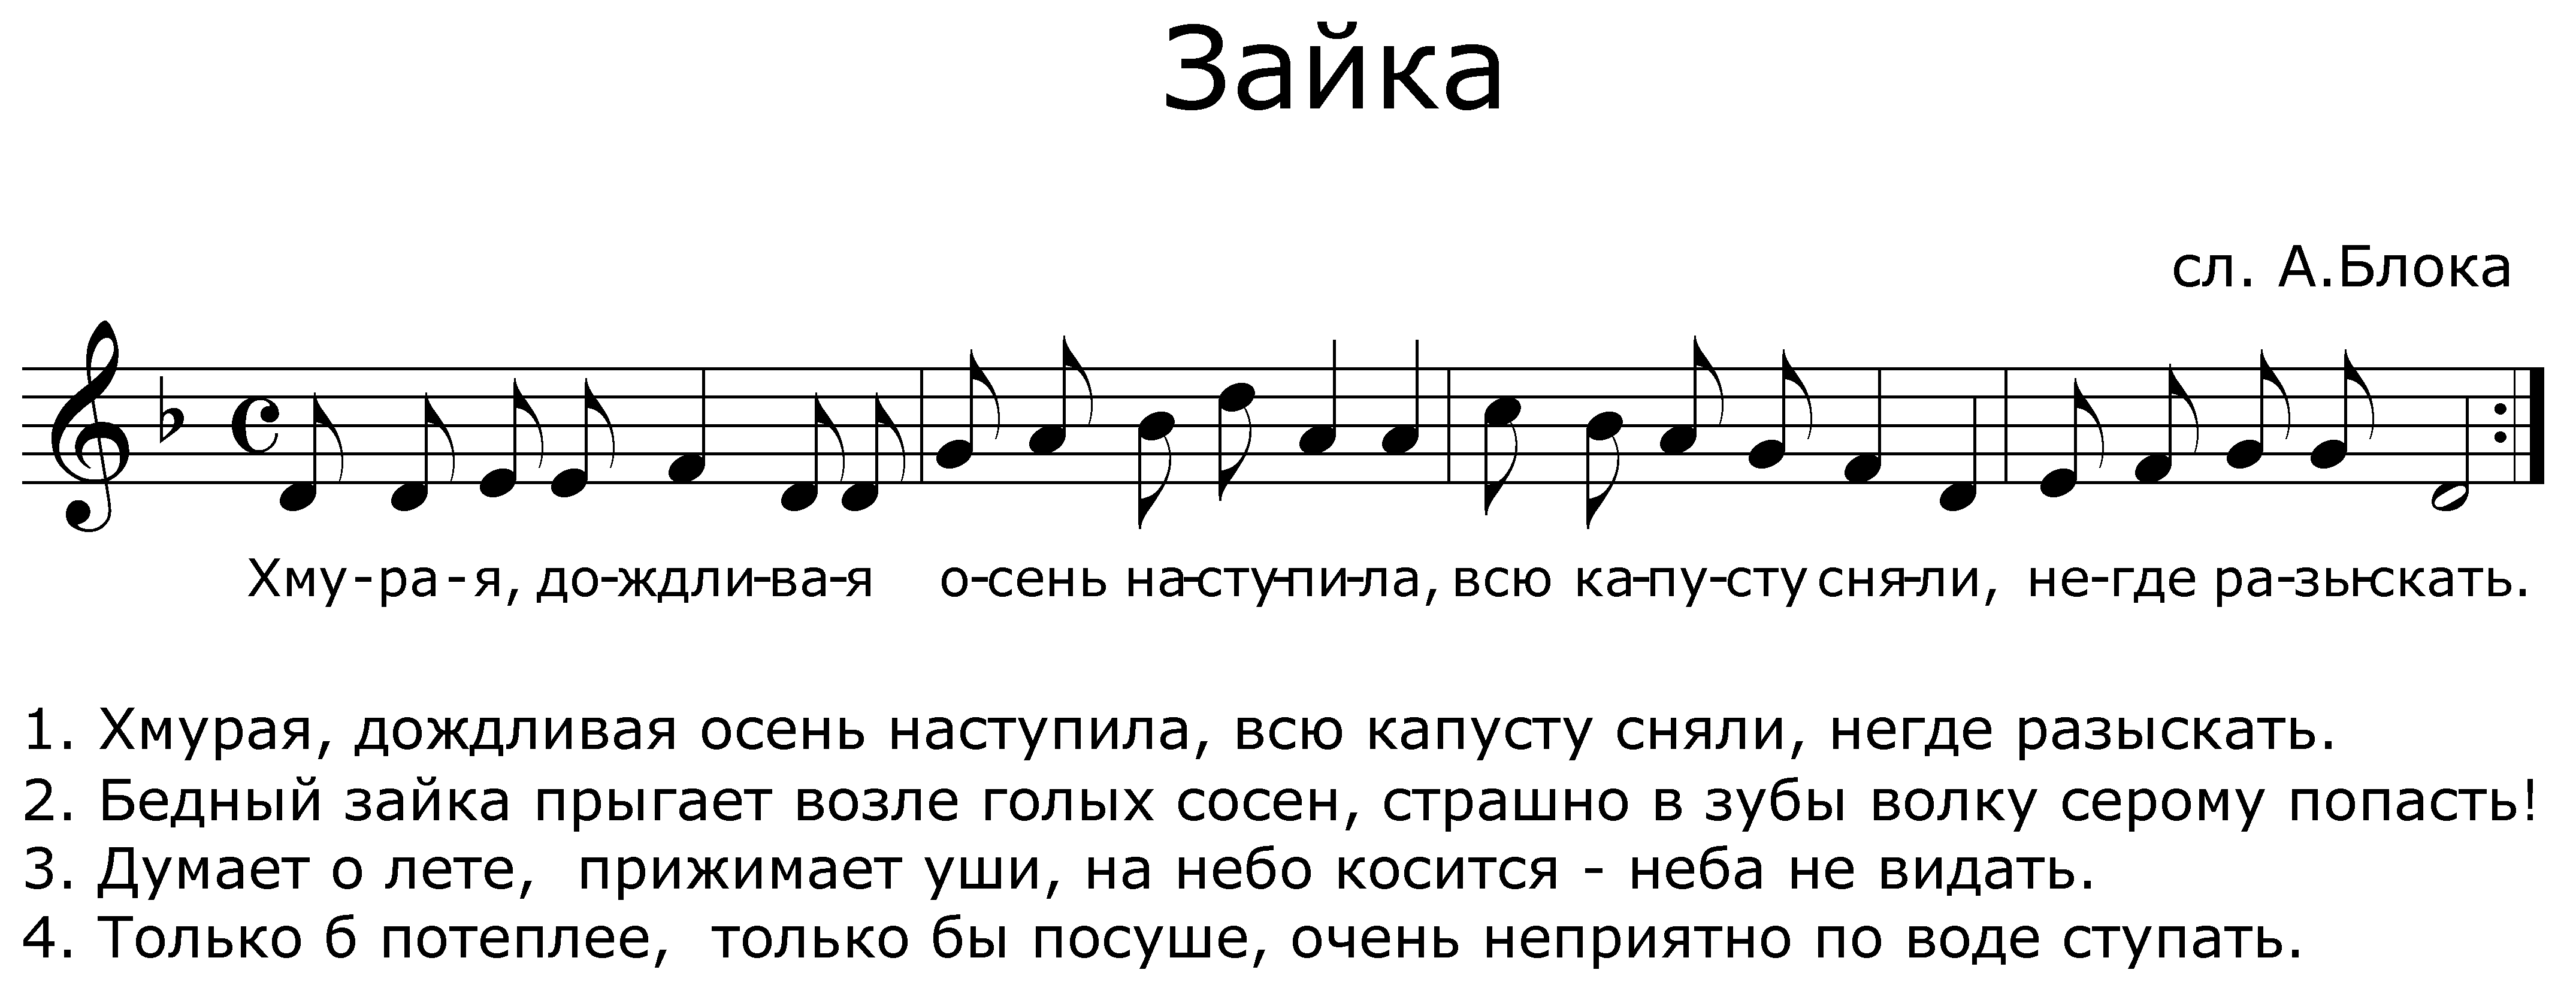 Песня многая лета русской